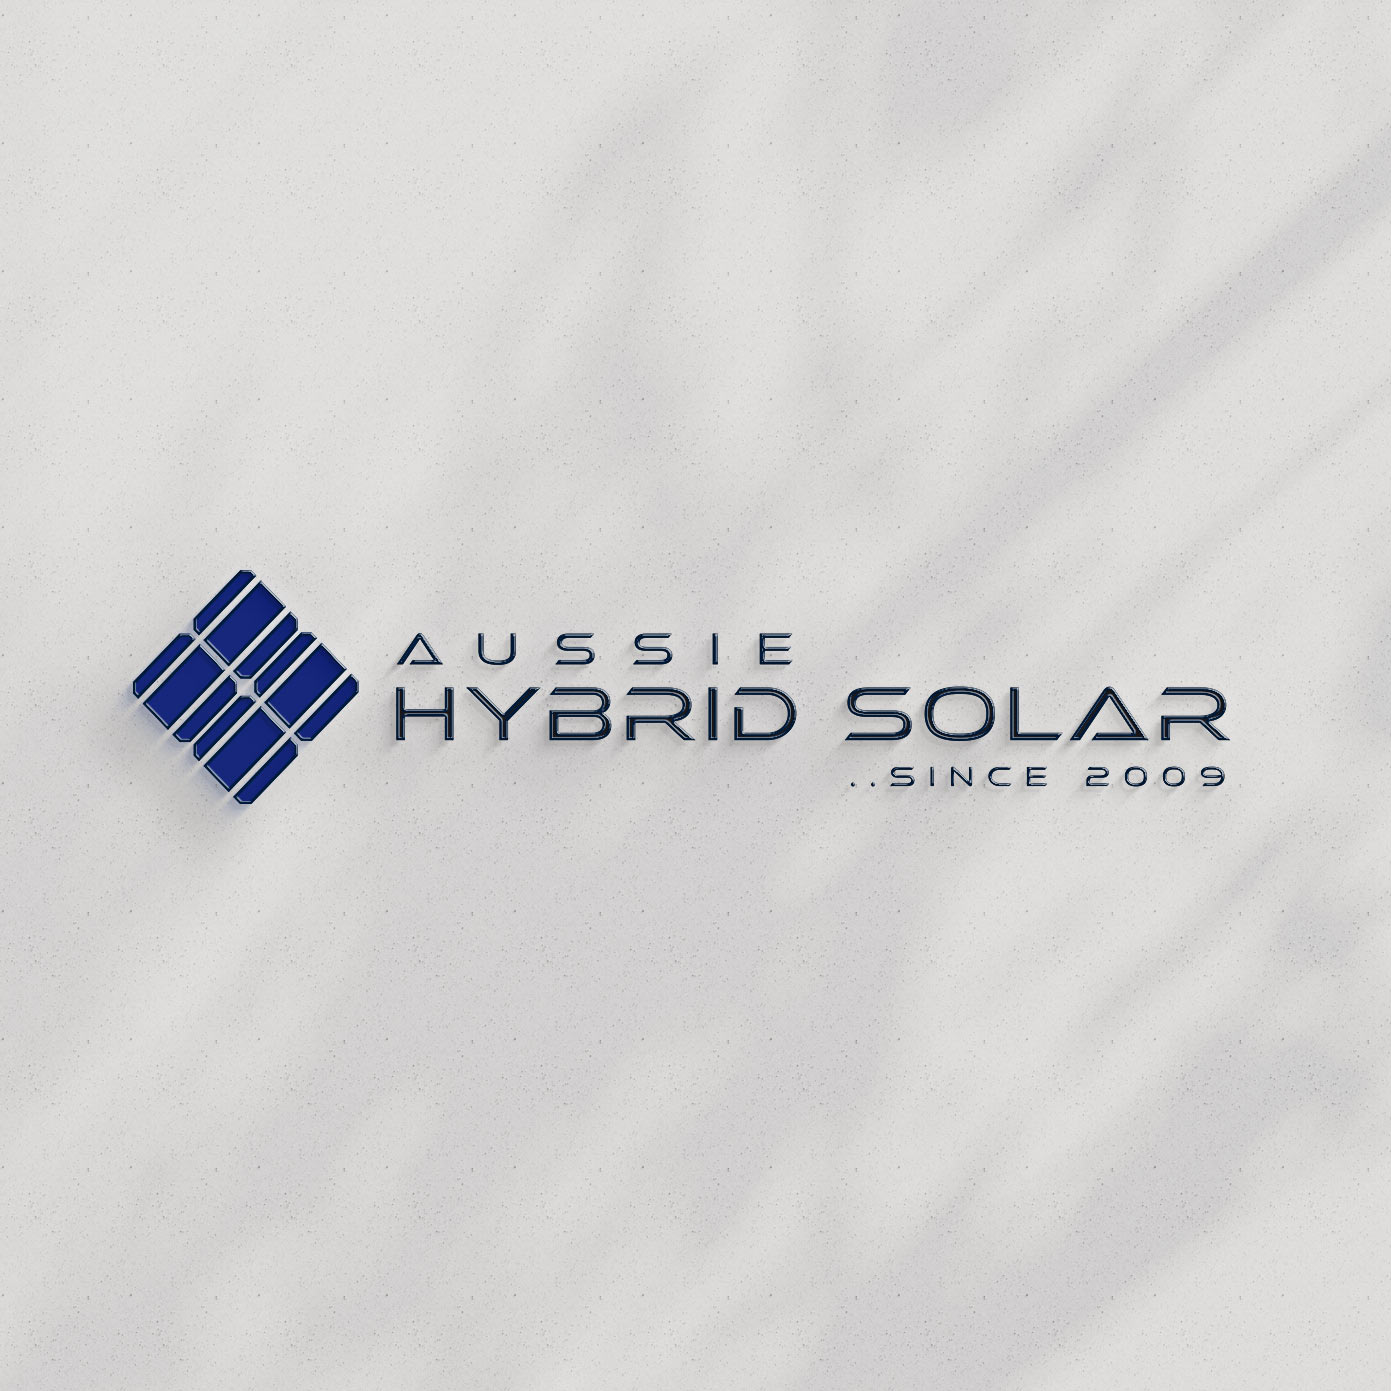 aussie hybrid solar logo design